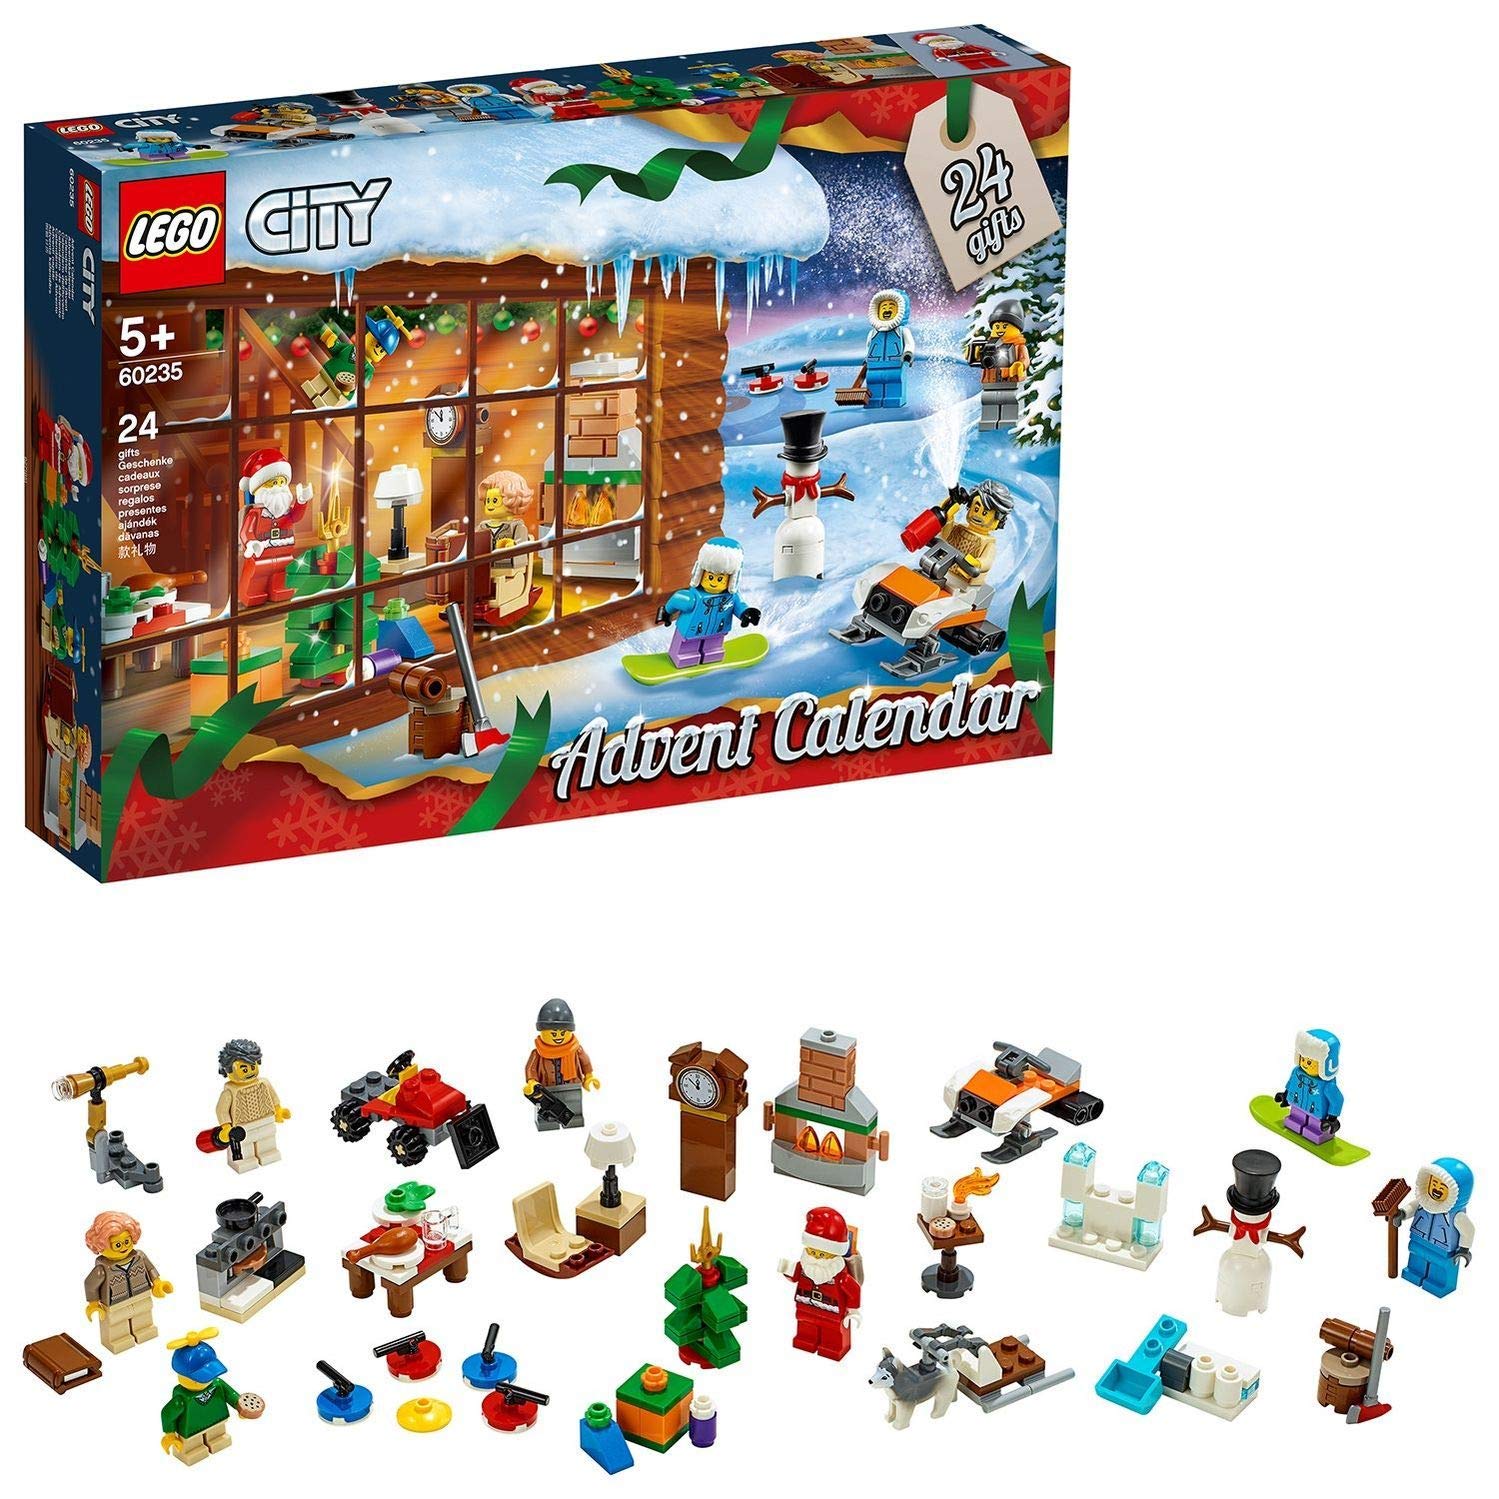 Lego 60235 City Advent Calendar, Construction Kit, Colourful